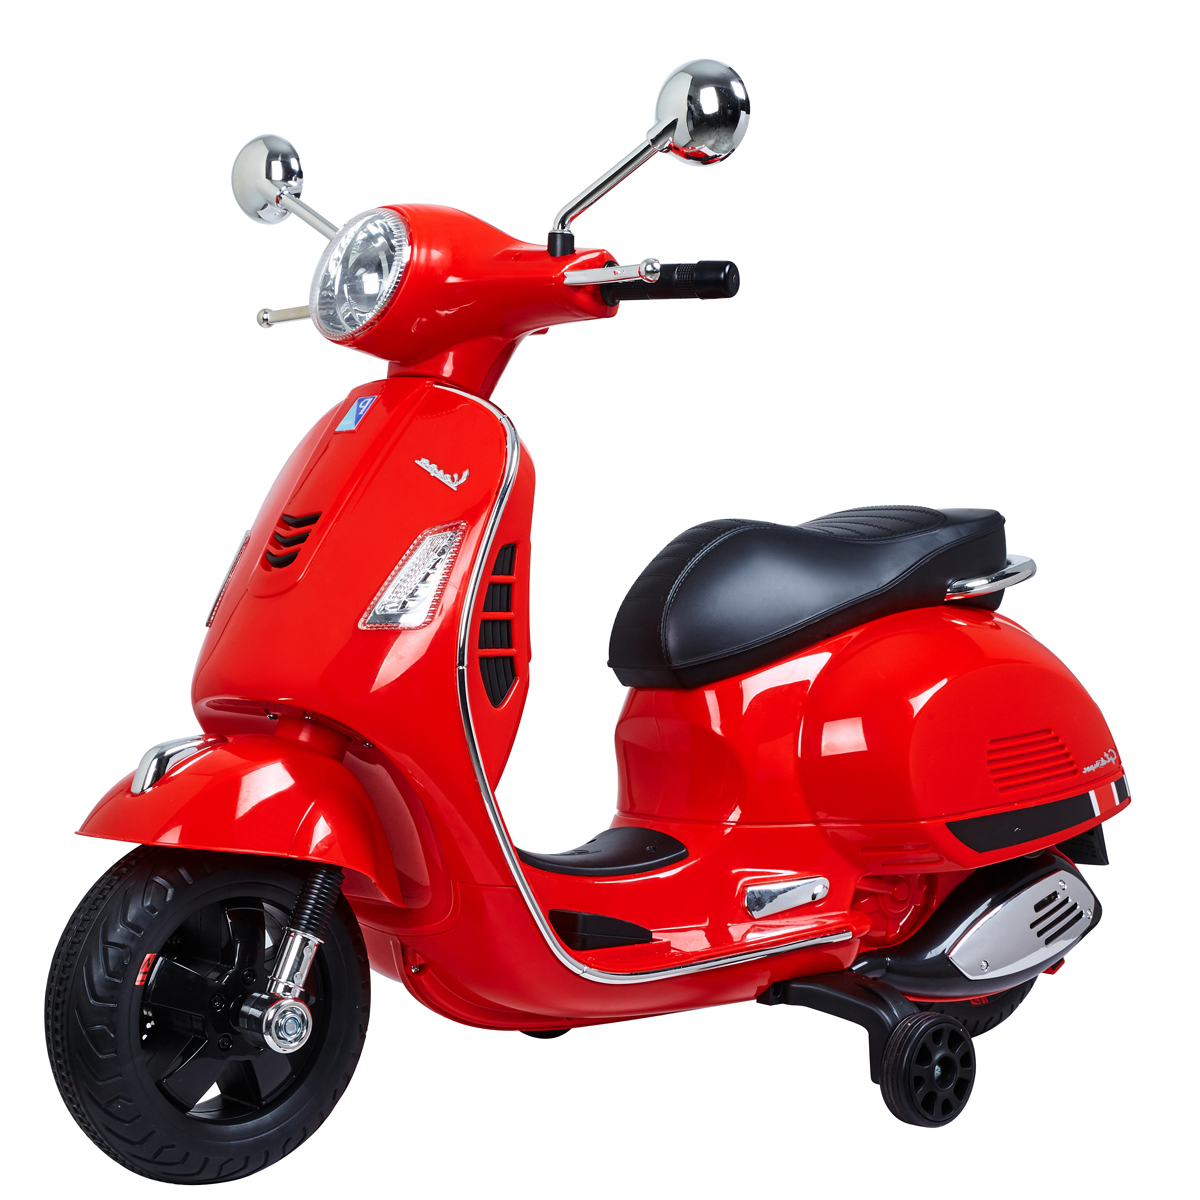 Moto électrique Vespa pour enfants 